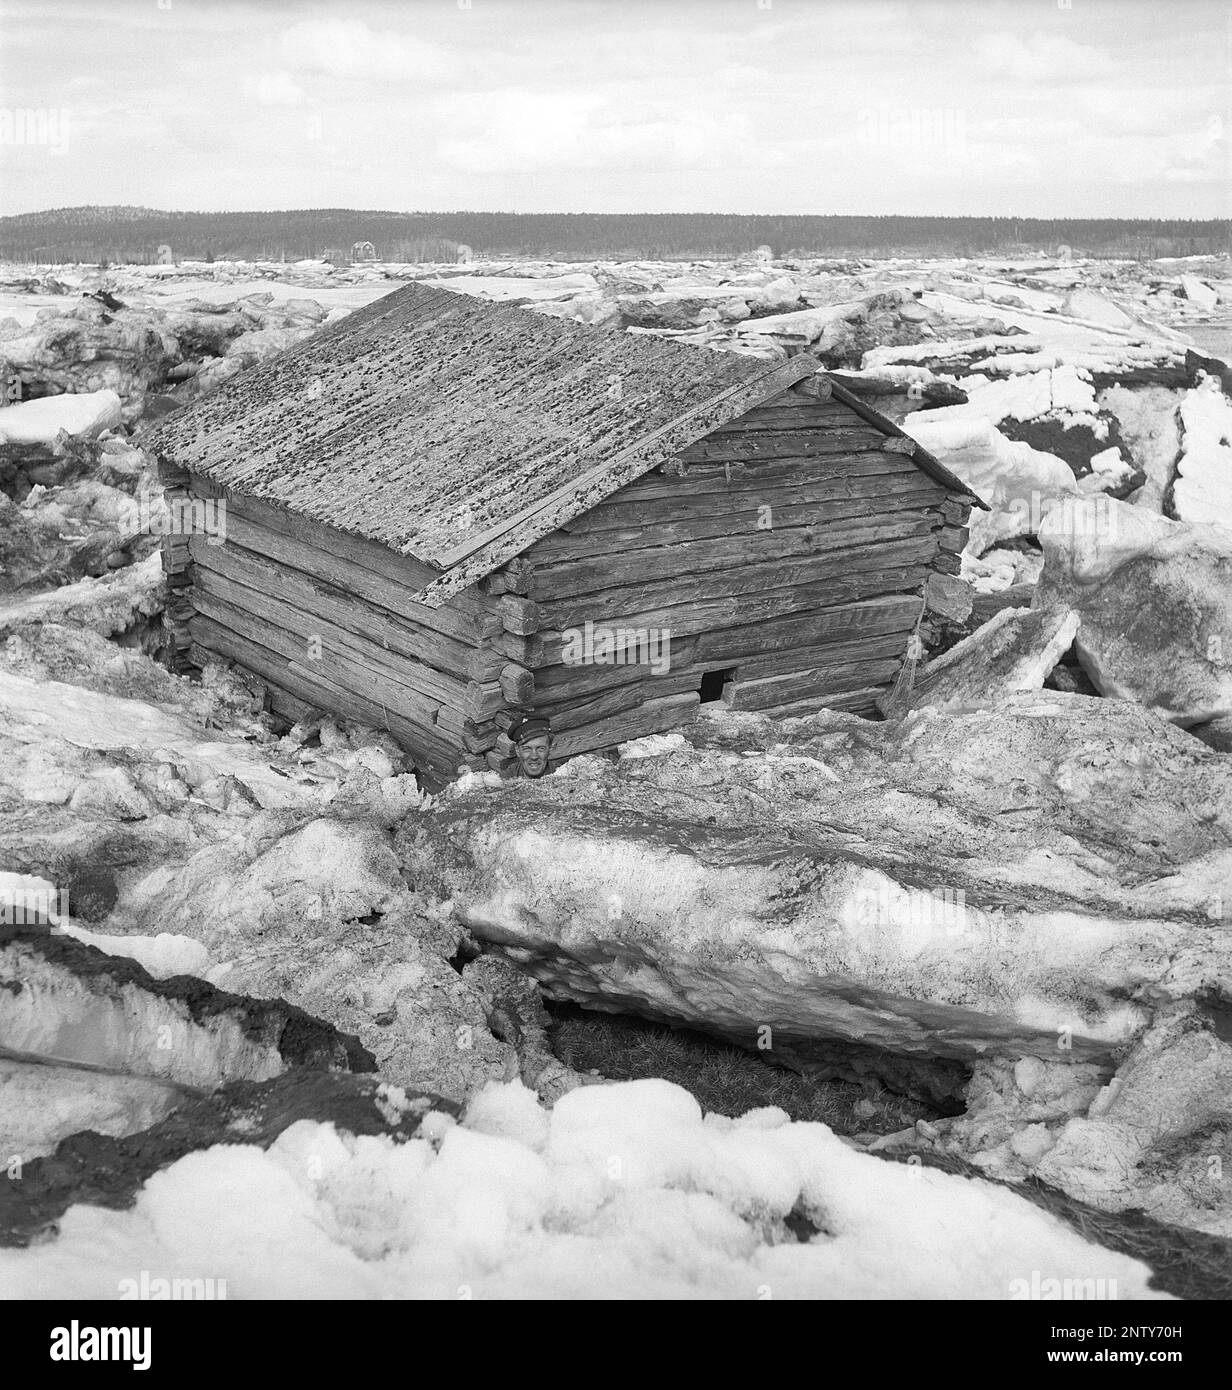 Naturkatastrophe in den 1940er Jahren. Im Frühsommer, den 20-23. Mai 1944, überflutete das Wasser im Fluss Torne älv aufgrund einer Eismasse, die das Wasser 3,5 Meter höher als normal dämpfte. Die Konsequenzen waren schwerwiegend. Auf dem umliegenden Gelände wurden Meter Eis zurückgelassen, als das Wasser ablief und die Bauernhäuser und die Felder zerstörte. Das Dorf Korpikylä in der Nähe von Skogskärr und ein Blick auf ein Fachwerkhaus, das durch das Eis weit entfernt von seinem ursprünglichen Standort bewegt wurde. Kristoffersson Ref. H118-3 Stockfoto